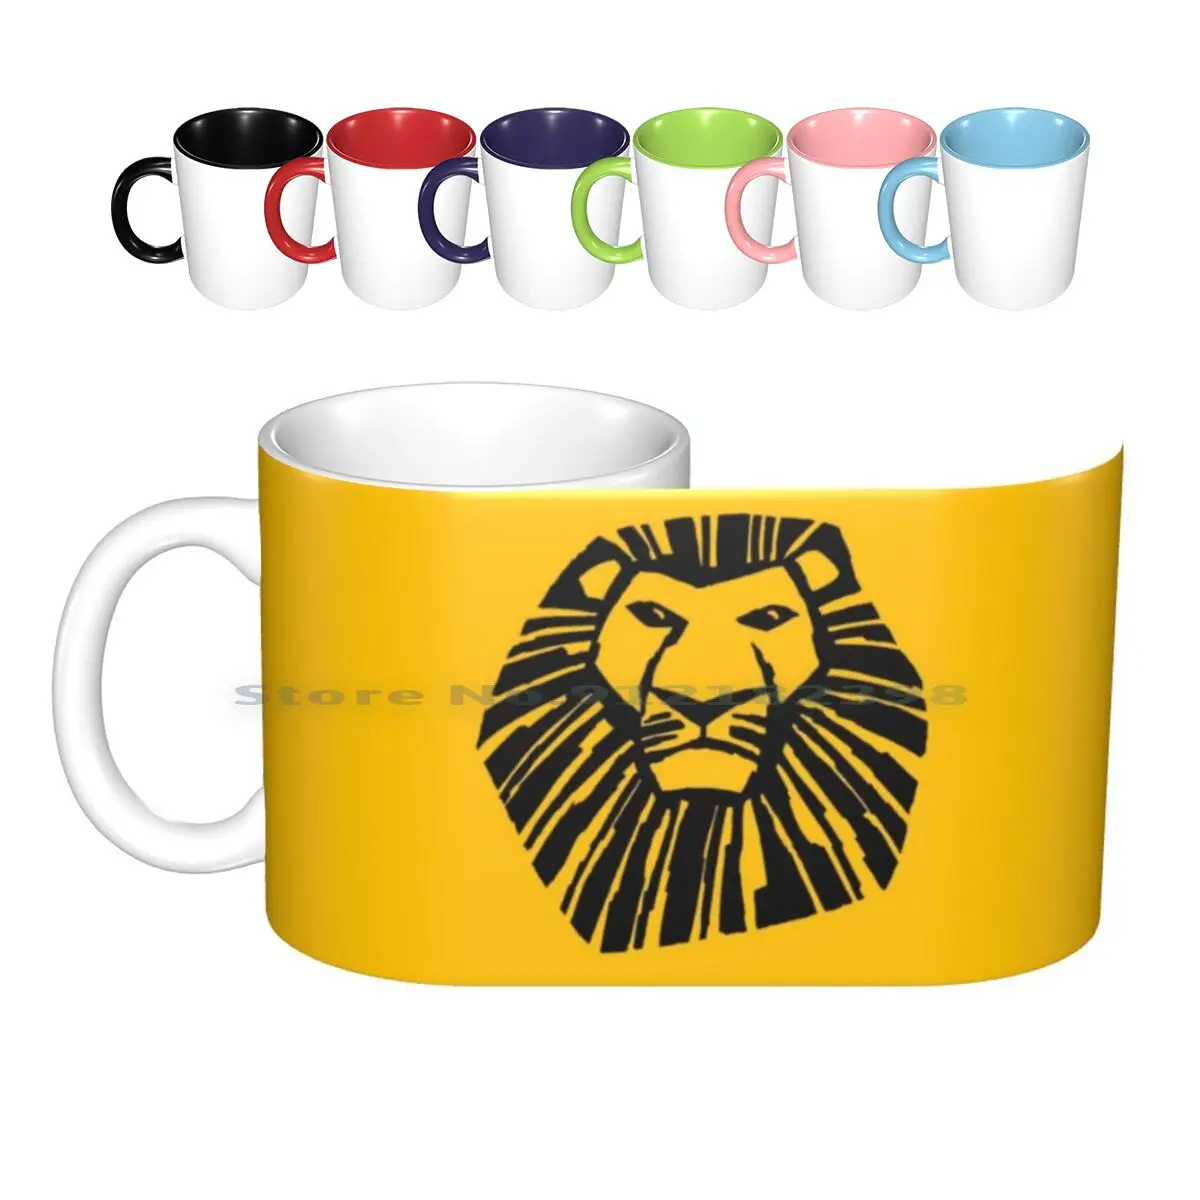 

Керамические кружки с логотипом «Король Лев», кофейные чашки, кружка для молока, чая, кружка «Король Лев», музыкальные актеры, песни, петь, му...